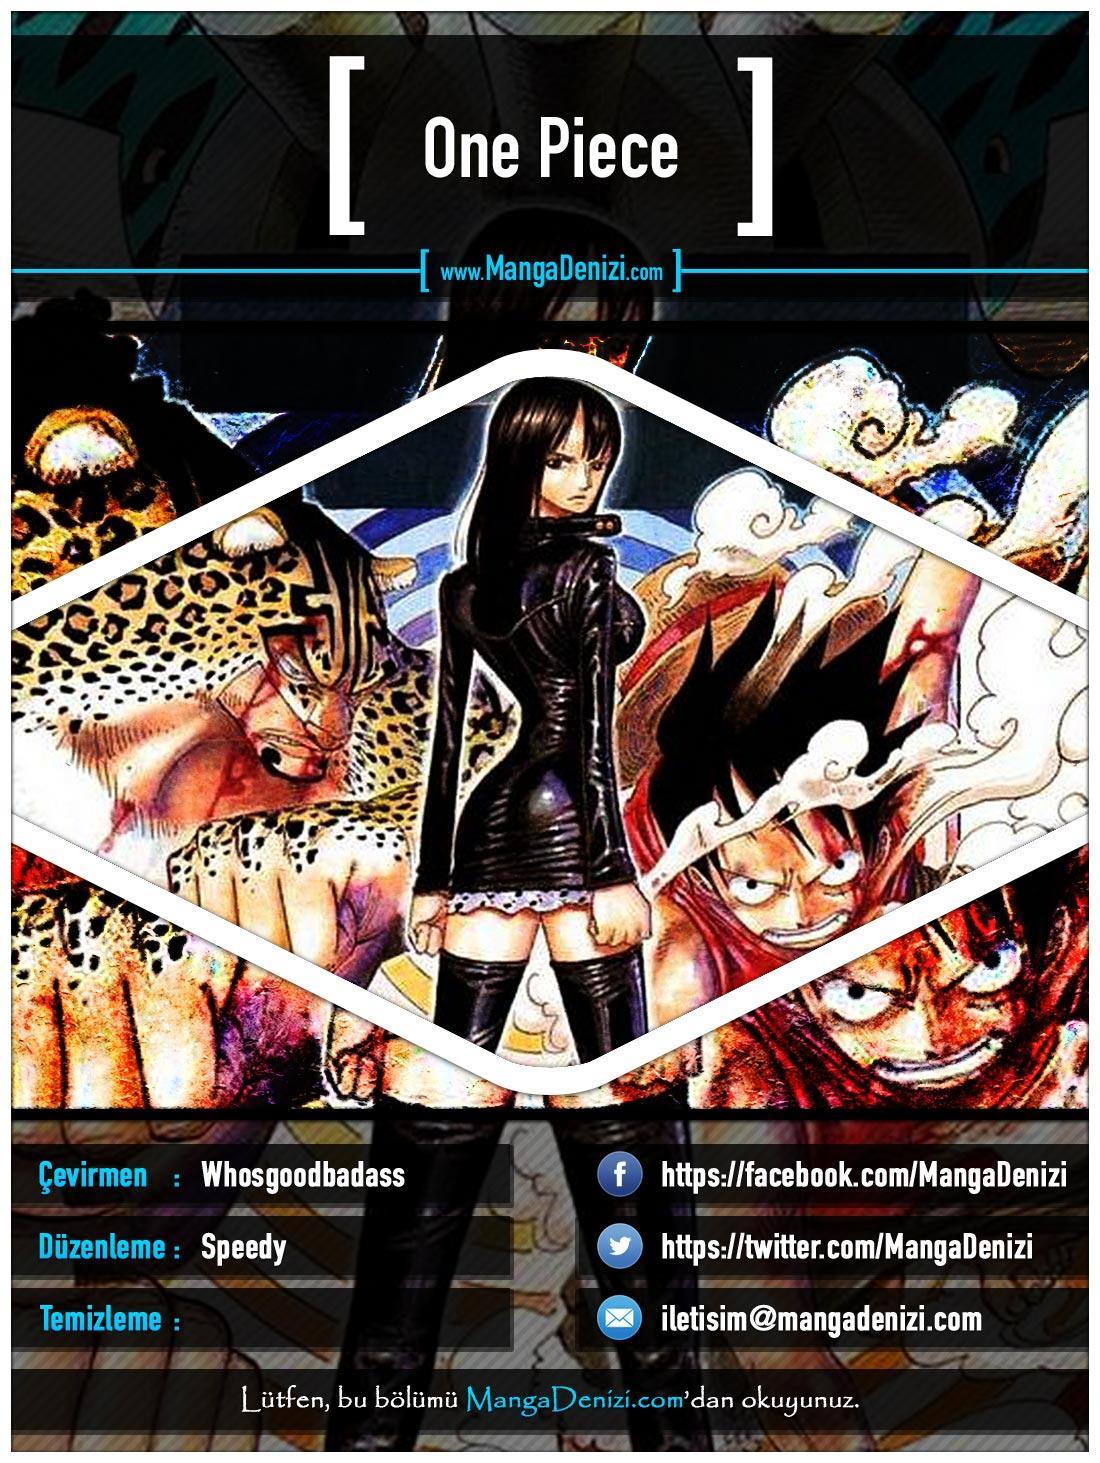 One Piece [Renkli] mangasının 0337 bölümünün 1. sayfasını okuyorsunuz.